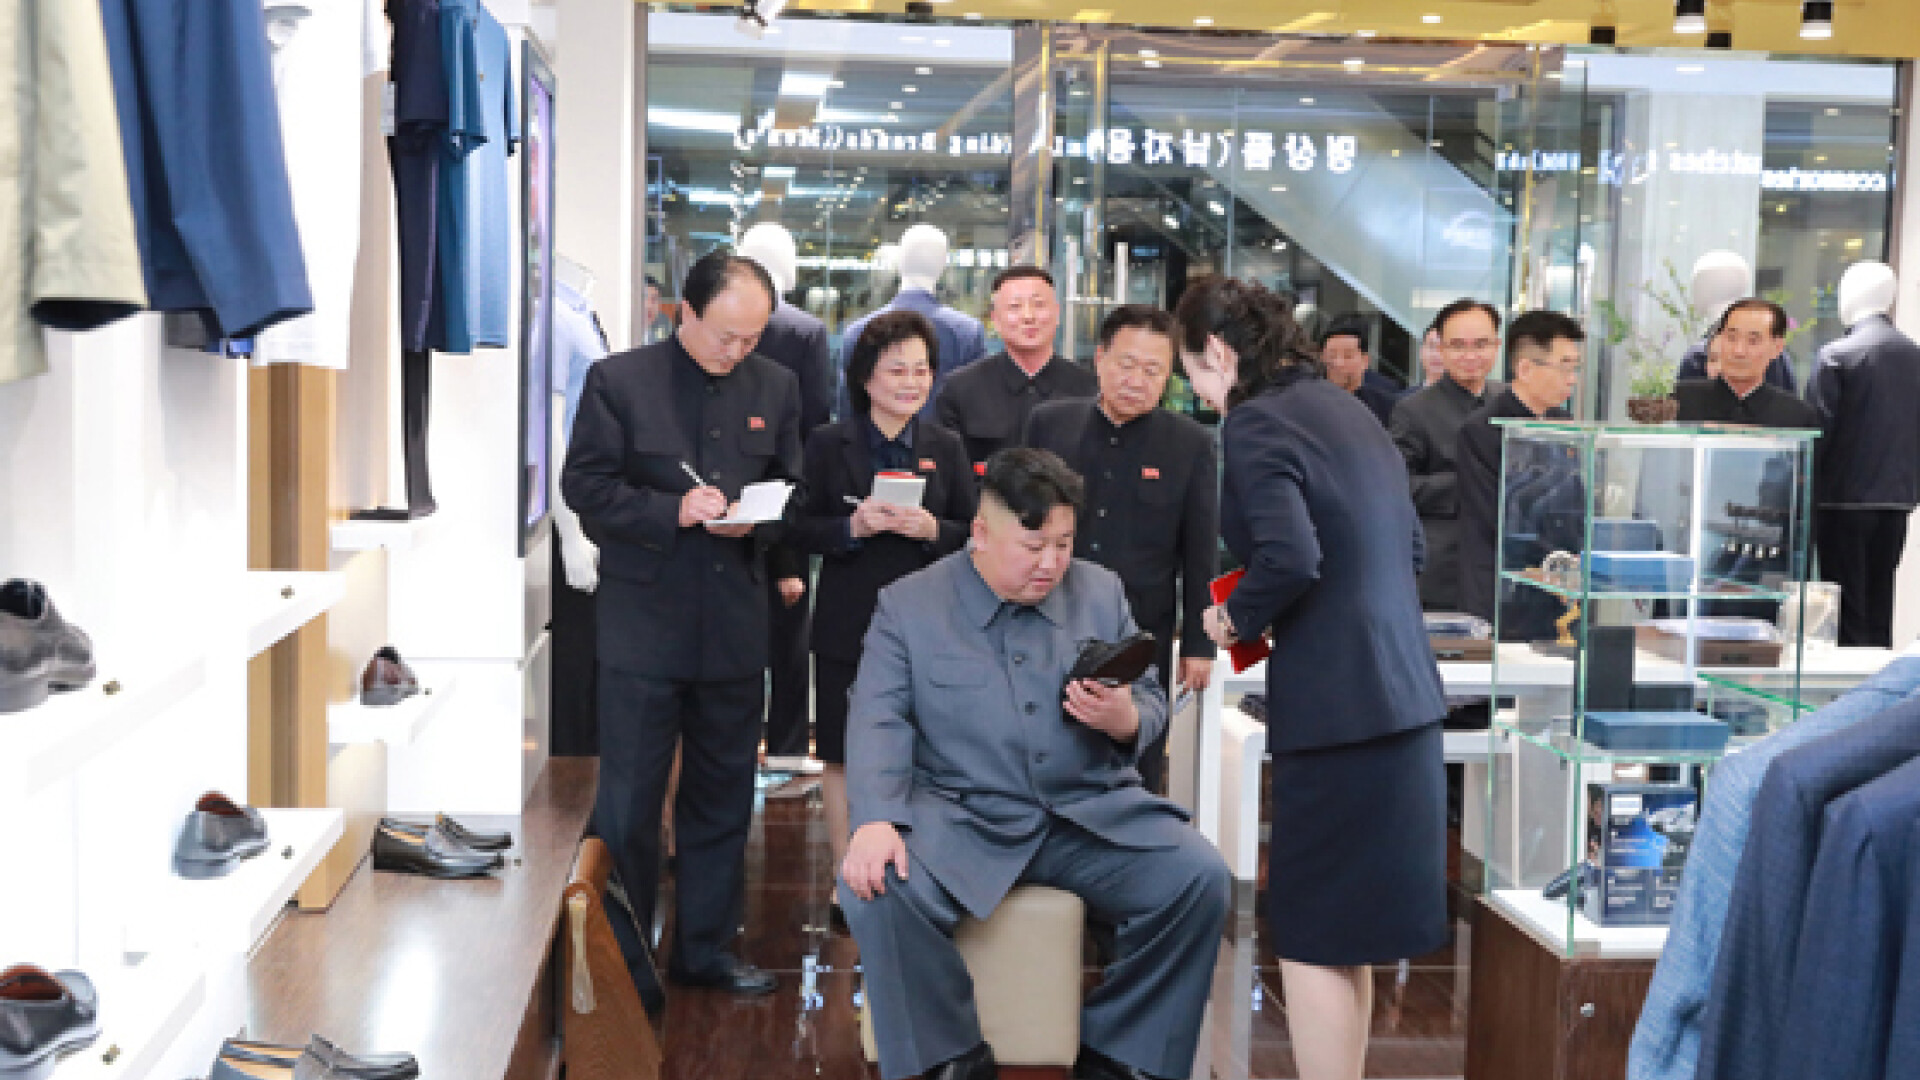 Reacția lui Kim Jong Un după ce a vizitat un mall în Coreea de Nord - 12